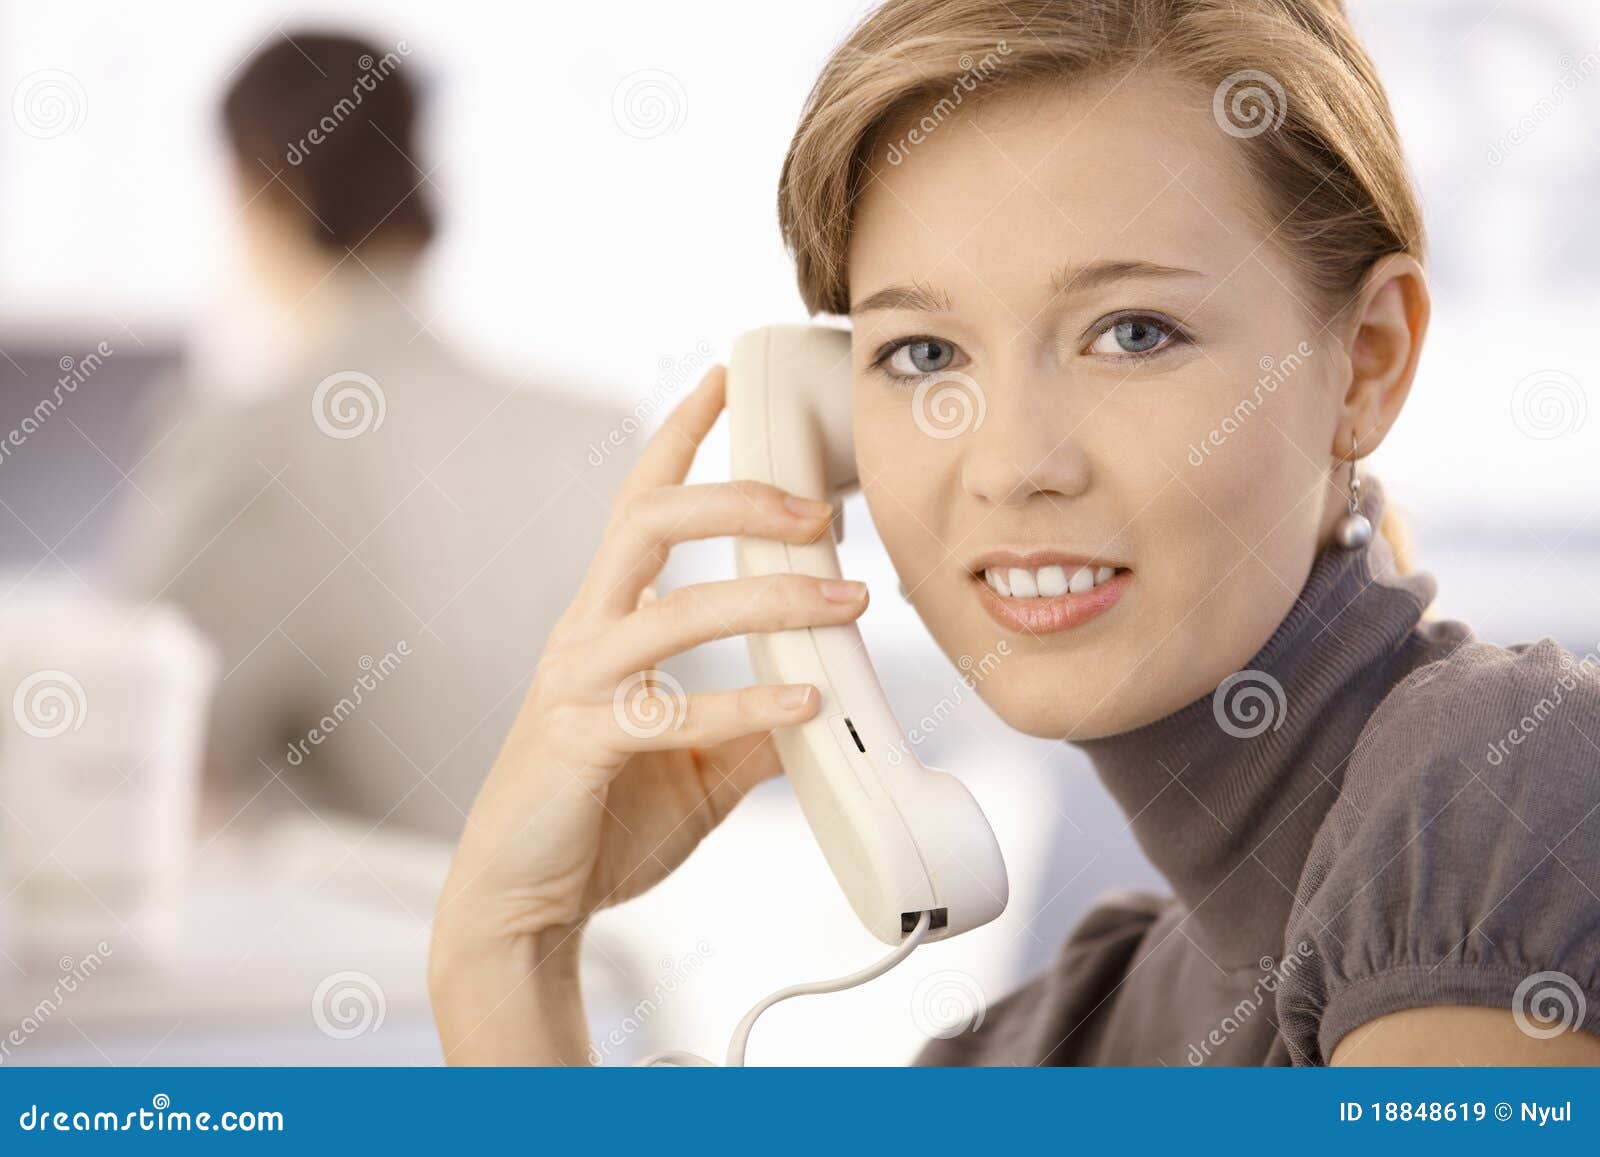 Не хочет разговаривать по телефону. Женщина с телефоном в офисе. Среднестатистическая женщина и телефон. Фото женщин болтающих по телефону. Женщина средних лет говорит по телефону.